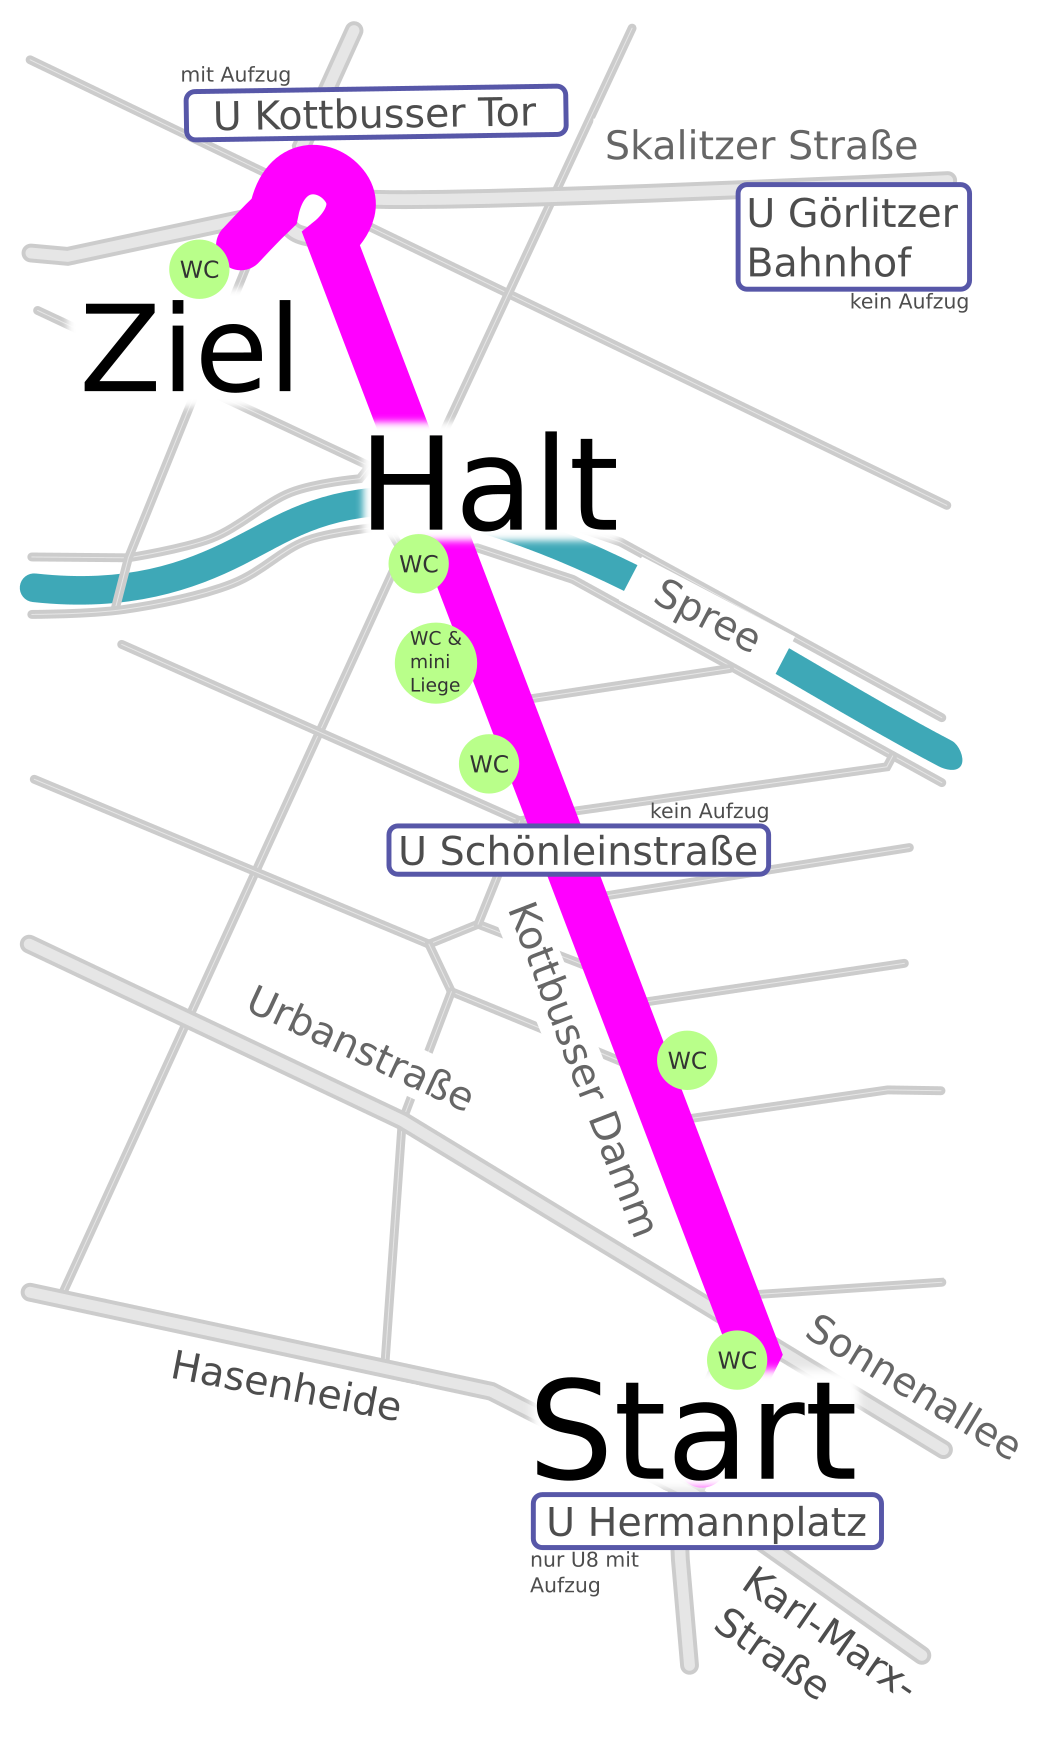 Eine kontrastreiche Kartendarstellung der Paradestrecke vom Hermannplatz über die Kottbusser Brücke zum Kottbusser Tor mit angrenzenden Straßen, rollstuhlgerechten WCs und U-Bahnhöfen.